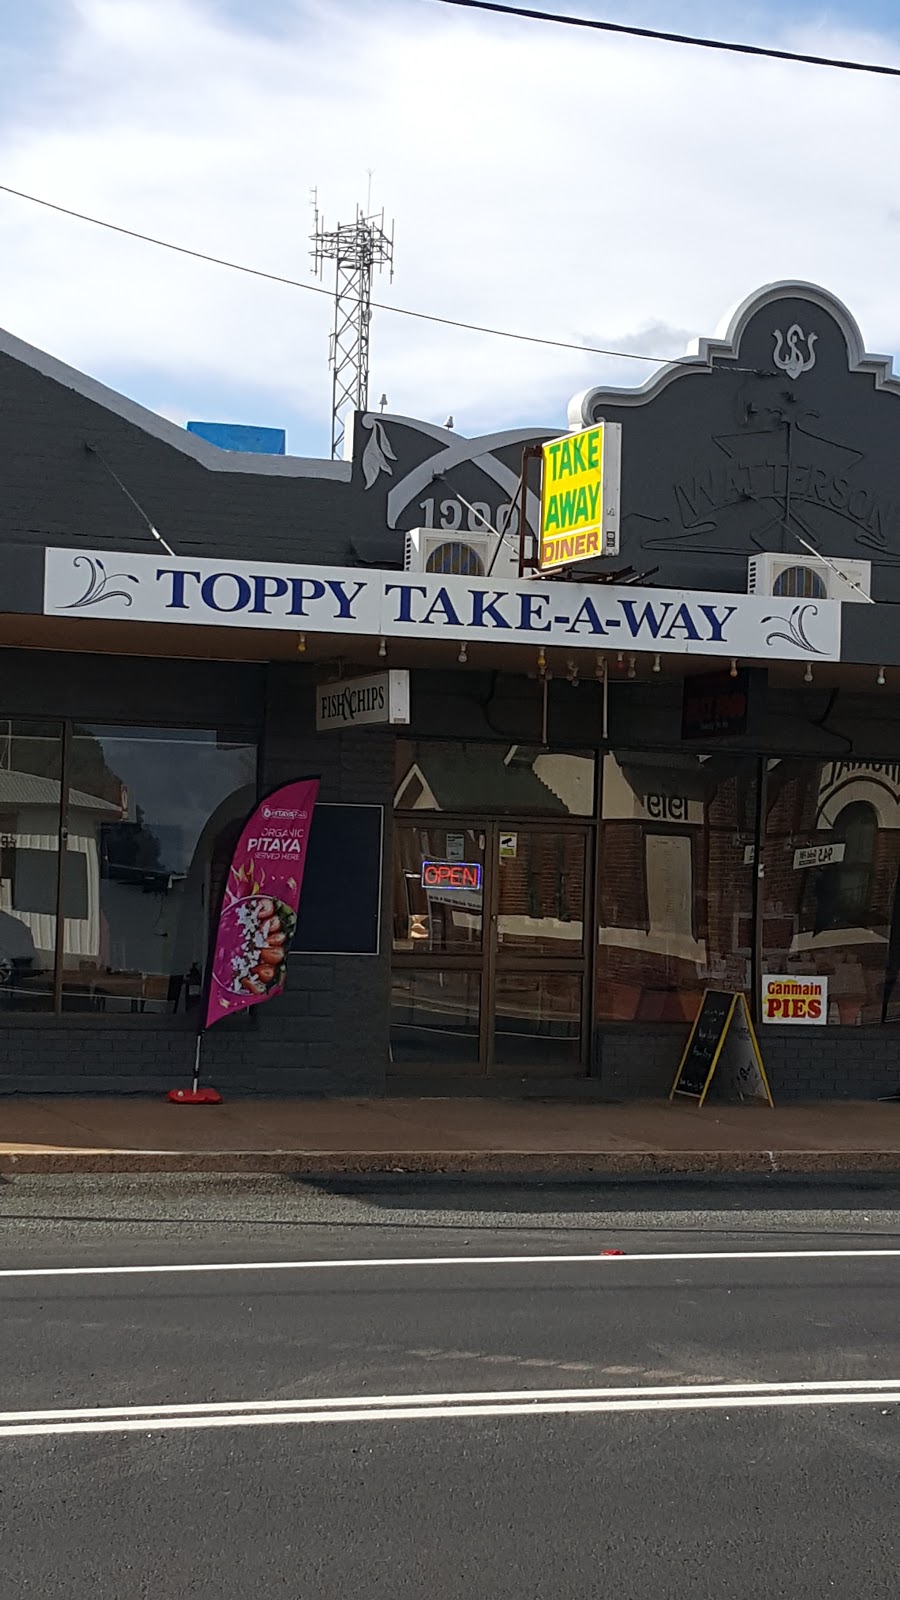 Toppy Take Away and Newsagency | restaurant | 71 Neeld St, Wyalong NSW 2671, Australia | 0269723535 OR +61 2 6972 3535